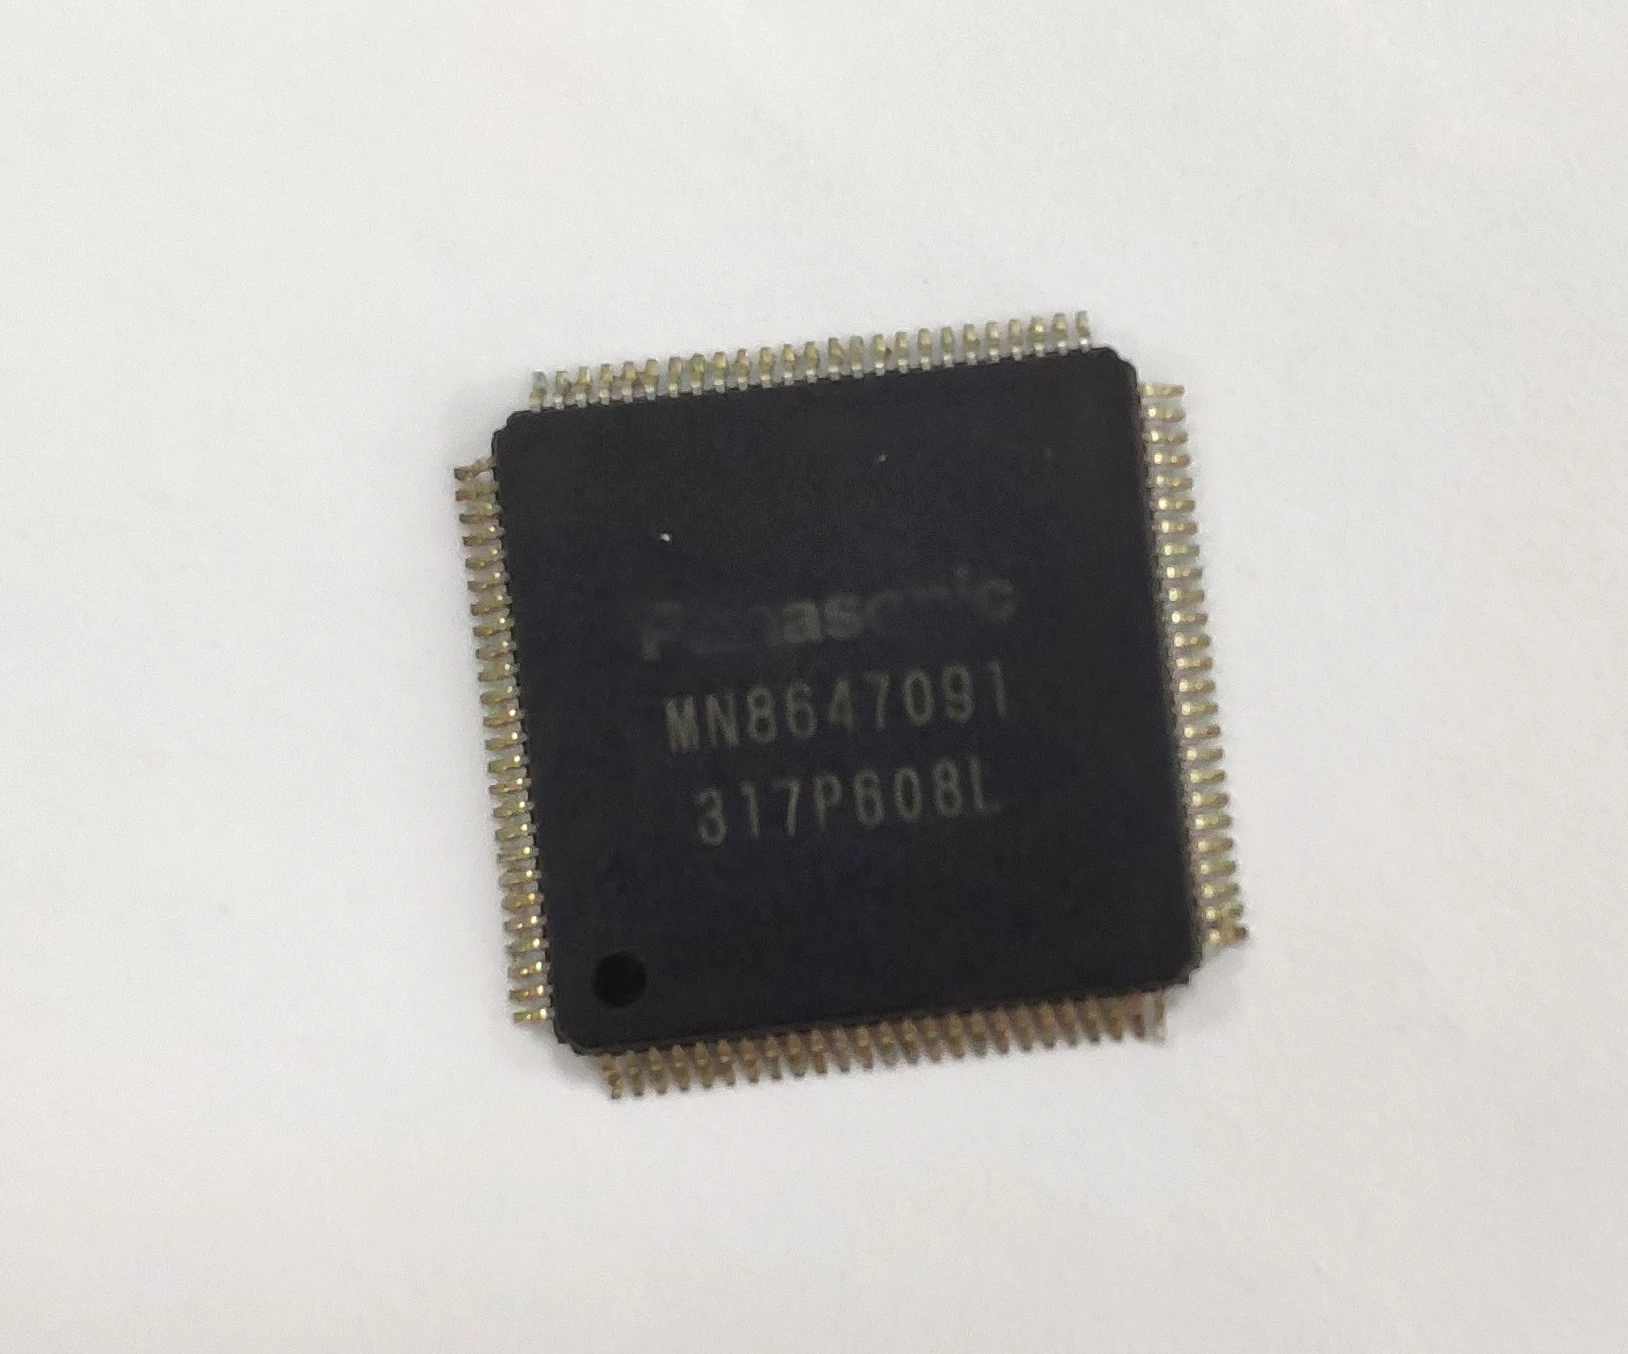 1 шт. 2 шт. HDMI IC чип MN8647091 Замена для Playstation 3 для PS3 тонкий супер тонкий